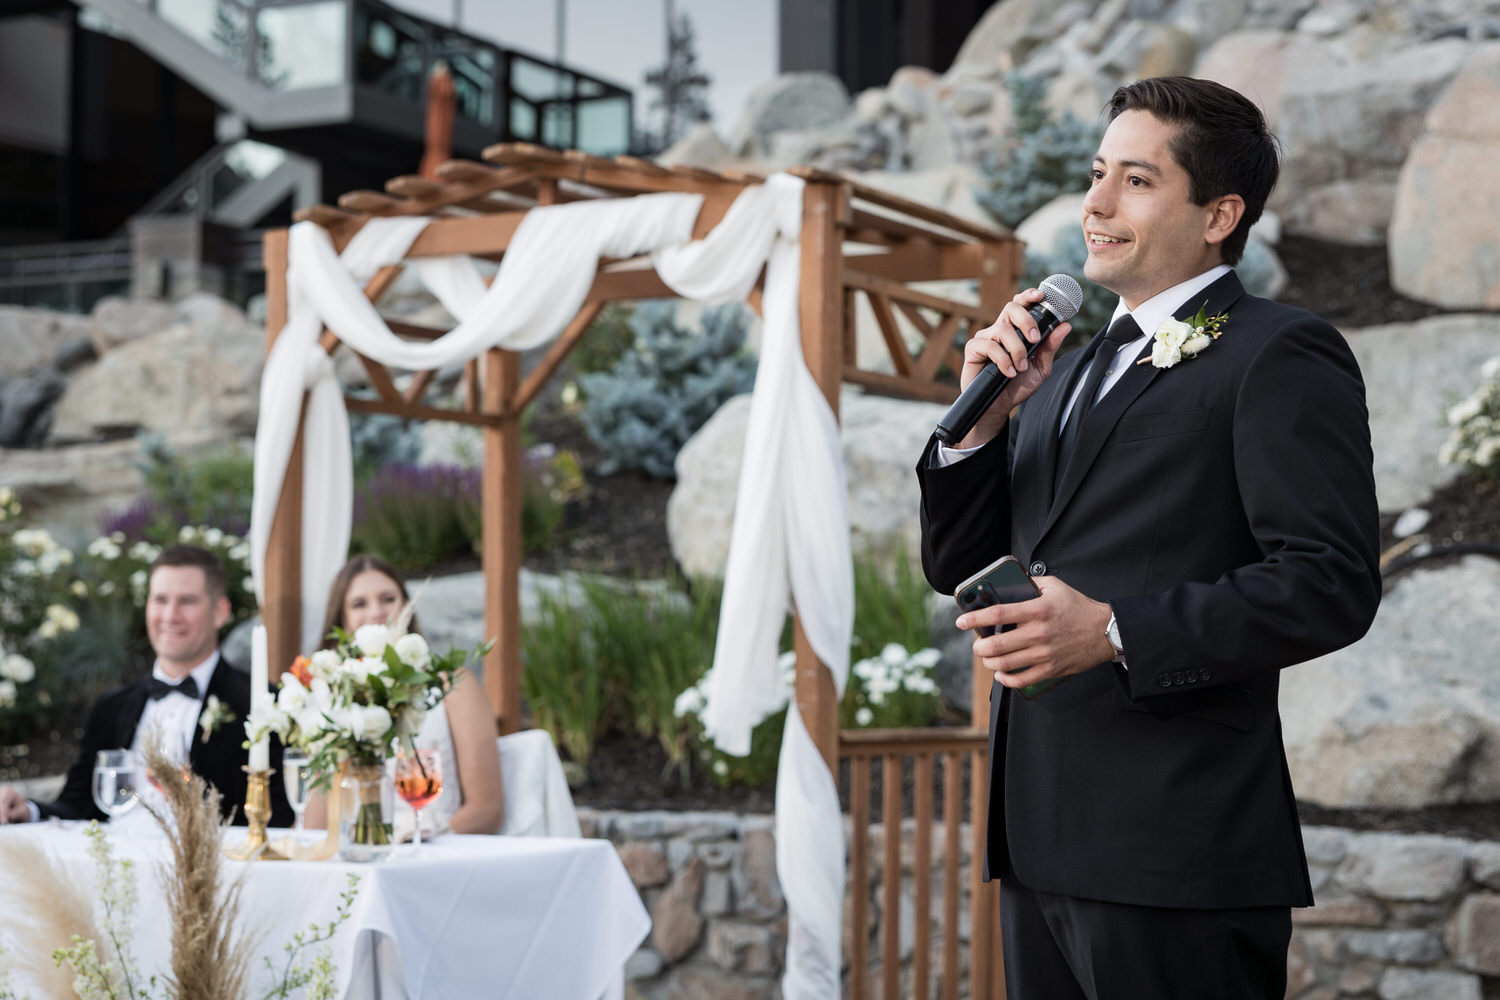 Best man making a funny wedding speech at an outdoor reception.